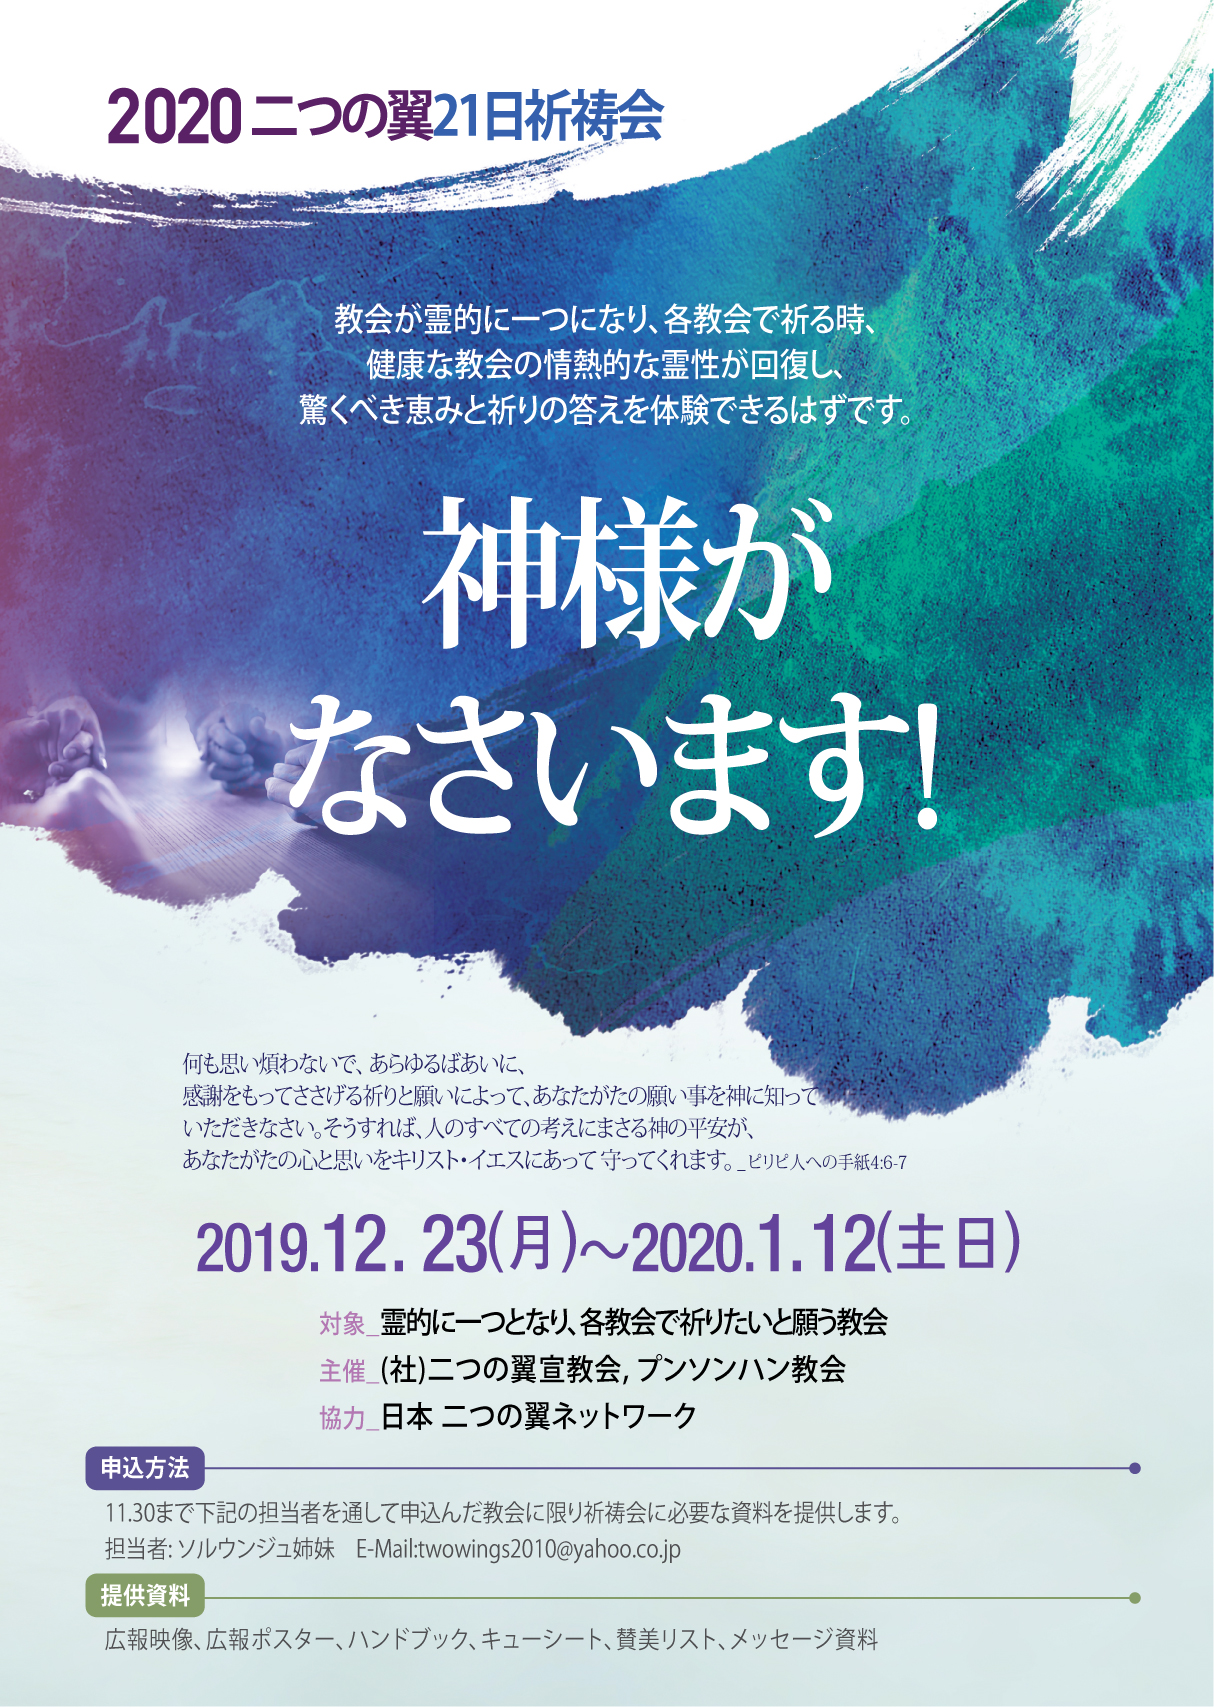 2020세이레-포스터-일본어